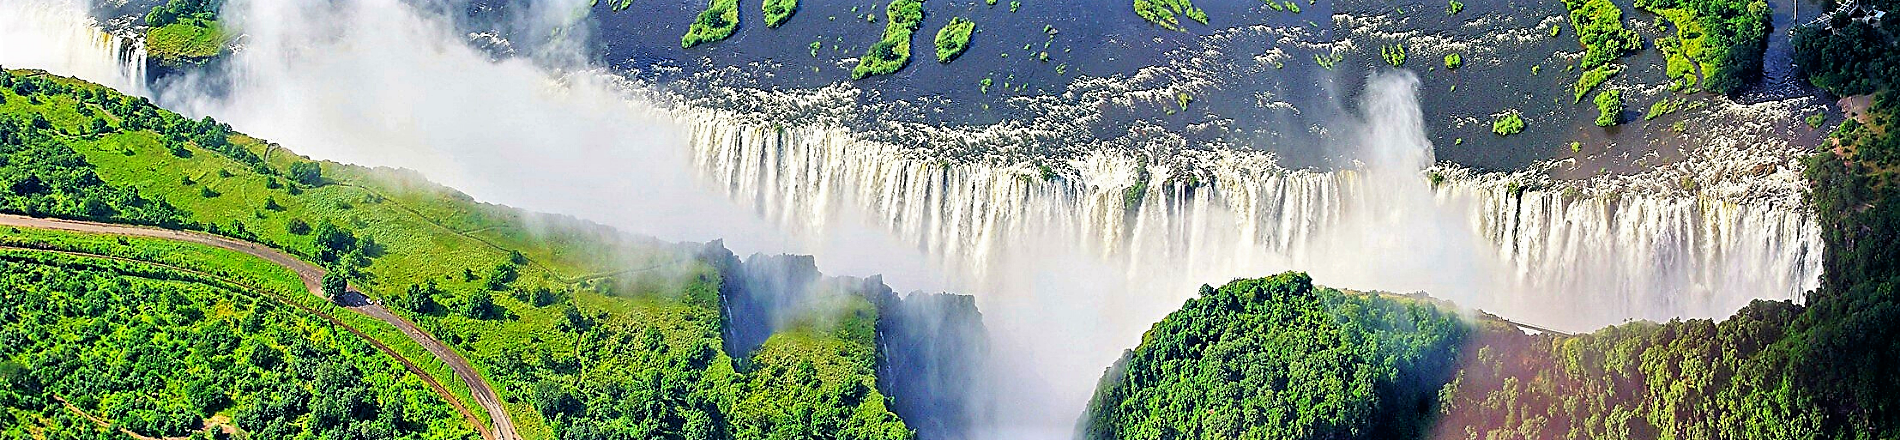 Viktorijini slapovi – nisu najveći, ali su najljepši